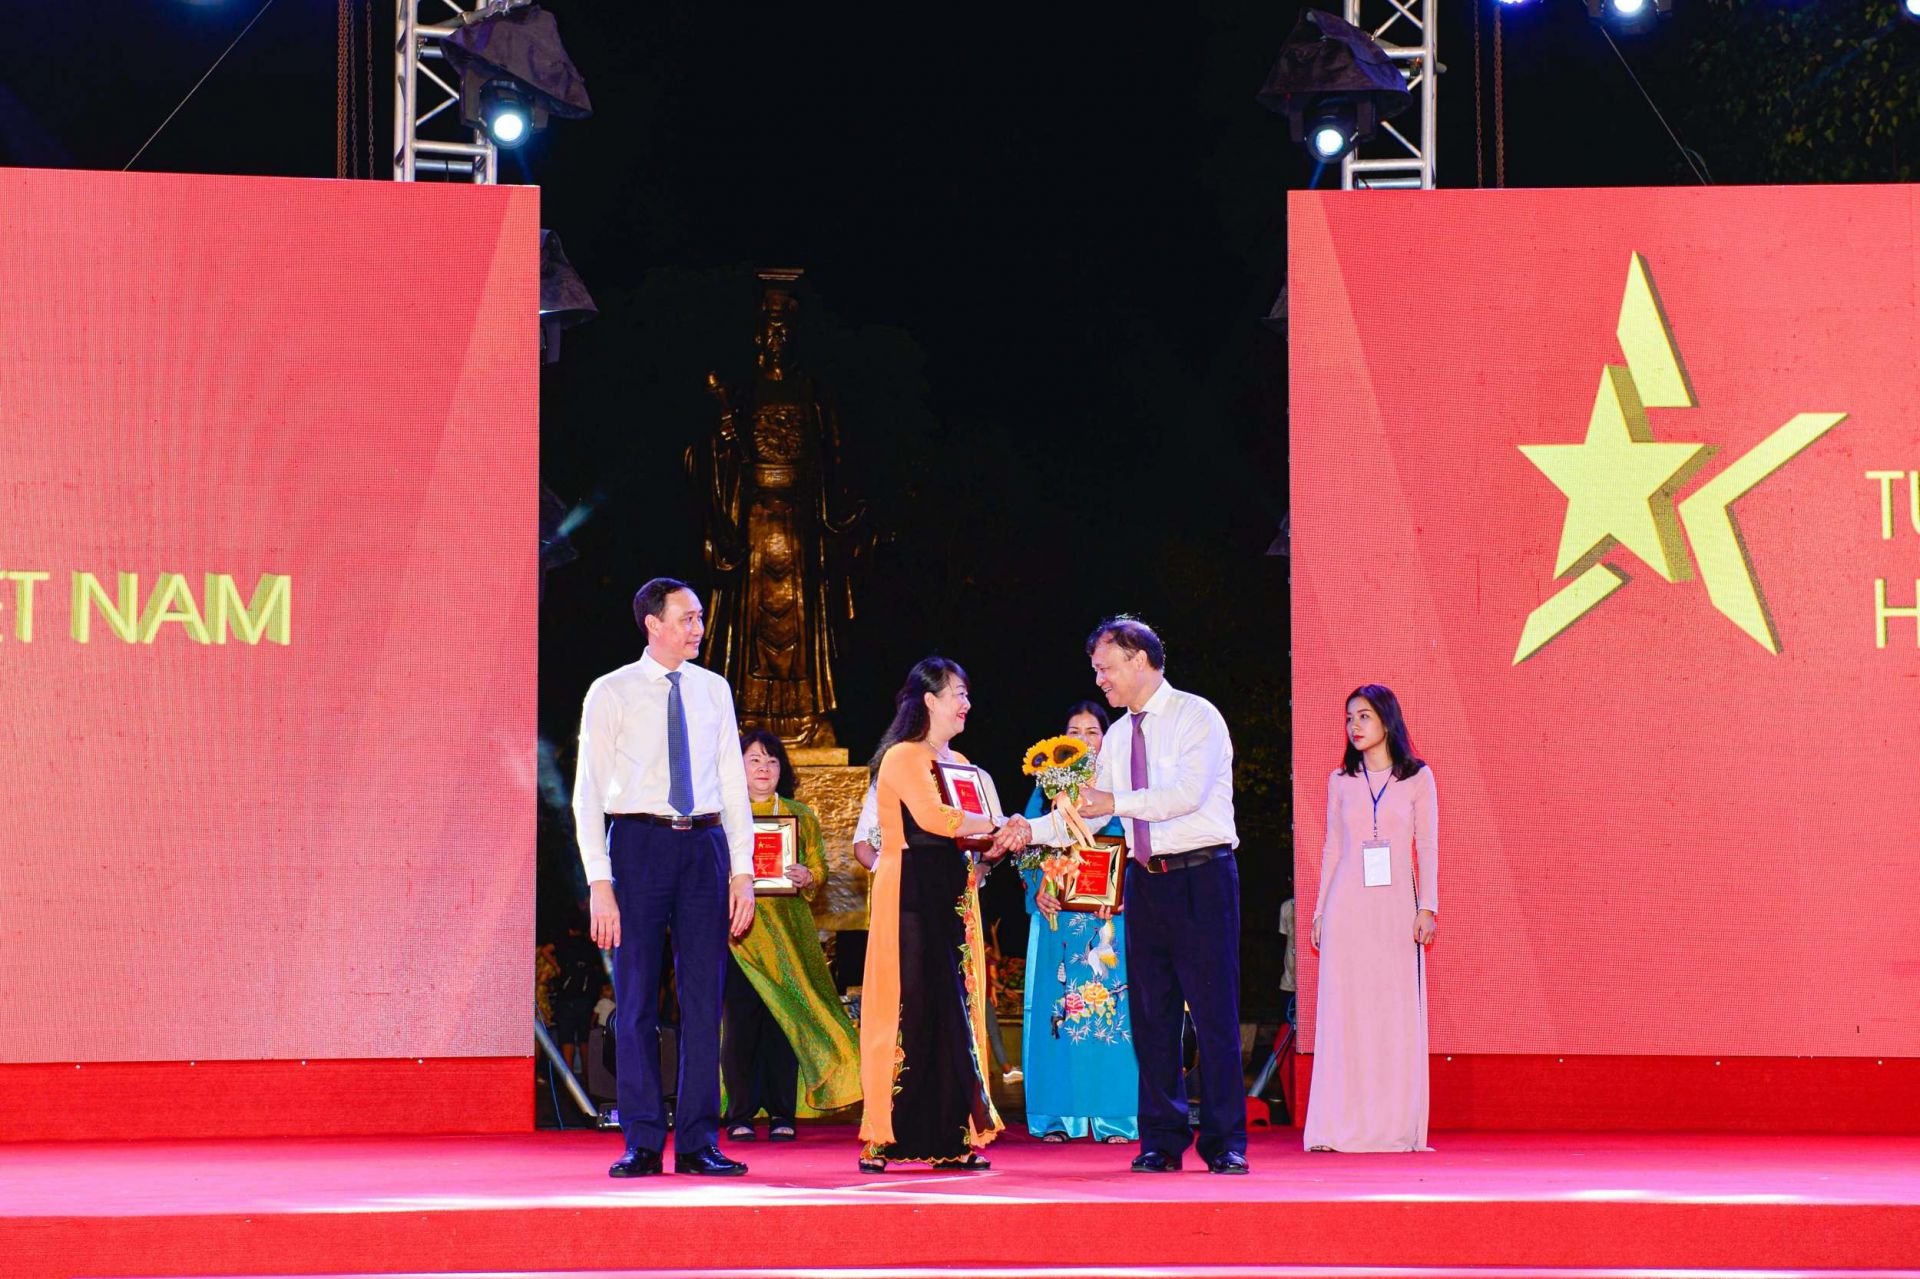 Phó Chủ tịch Ủy ban Trung ương Mặt trận Tổ quốc Việt Nam Phùng Khánh Tài (trái) và Thứ trưởng Bộ Công Thương Đỗ Thắng Hải (phải) trao kỷ niệm chương cho đại diện Sở Công Thương Gia Lai